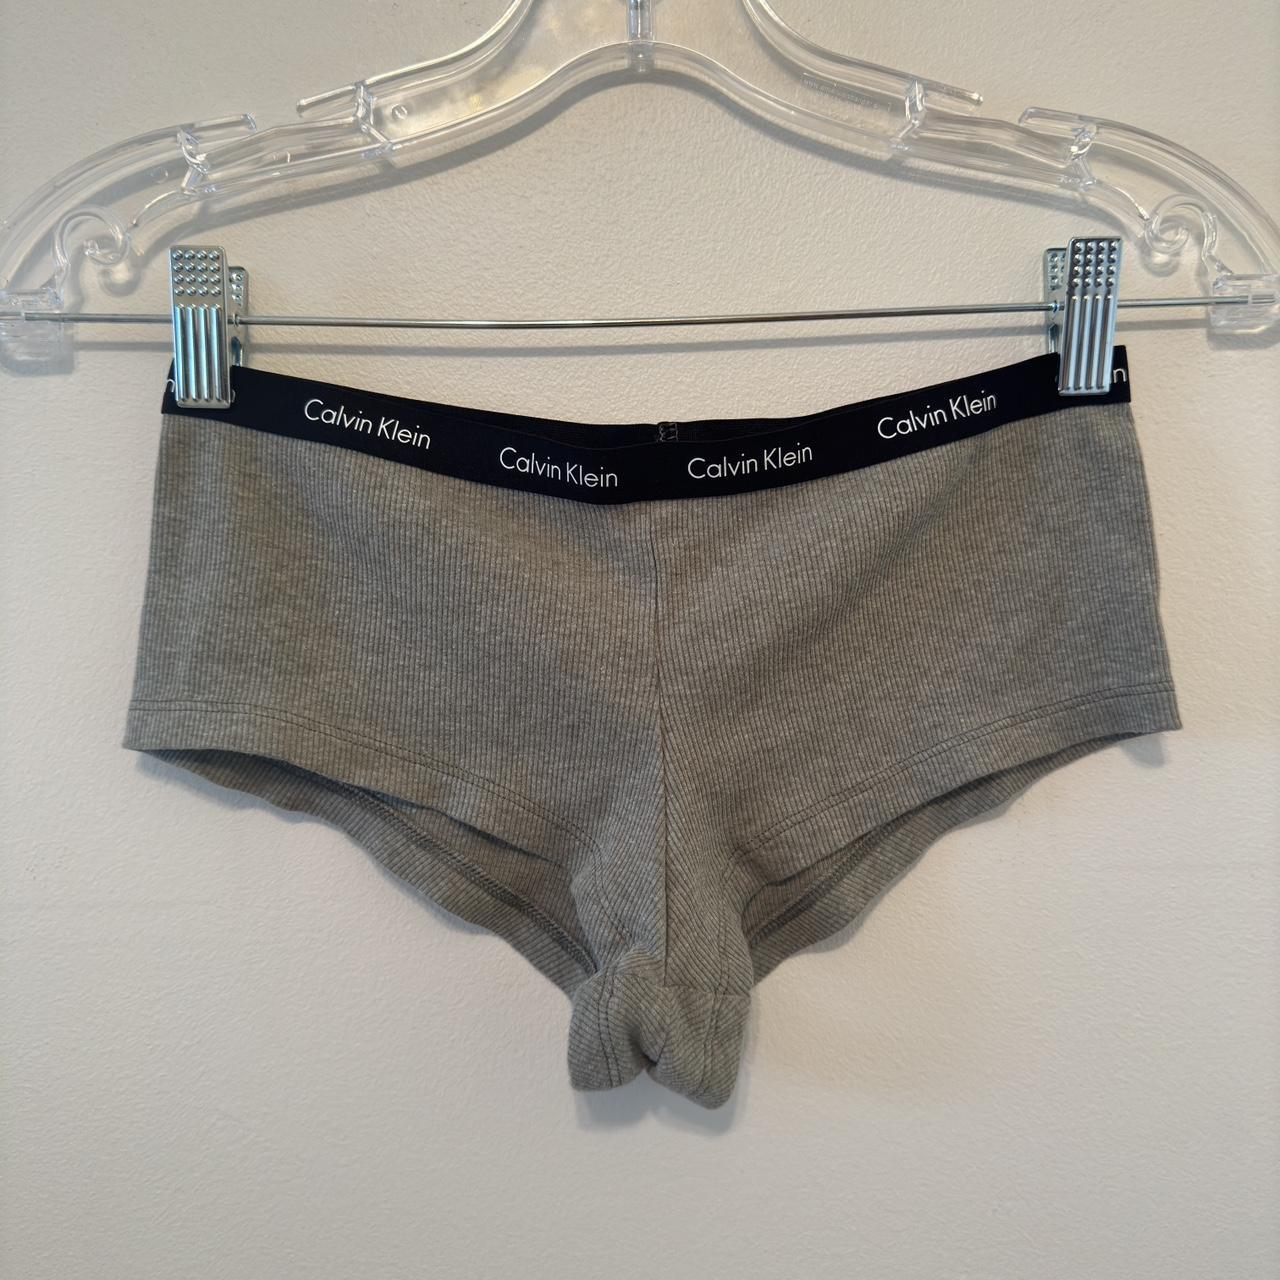 Calvin Klein seamless hipster underwear. Brand new - Depop